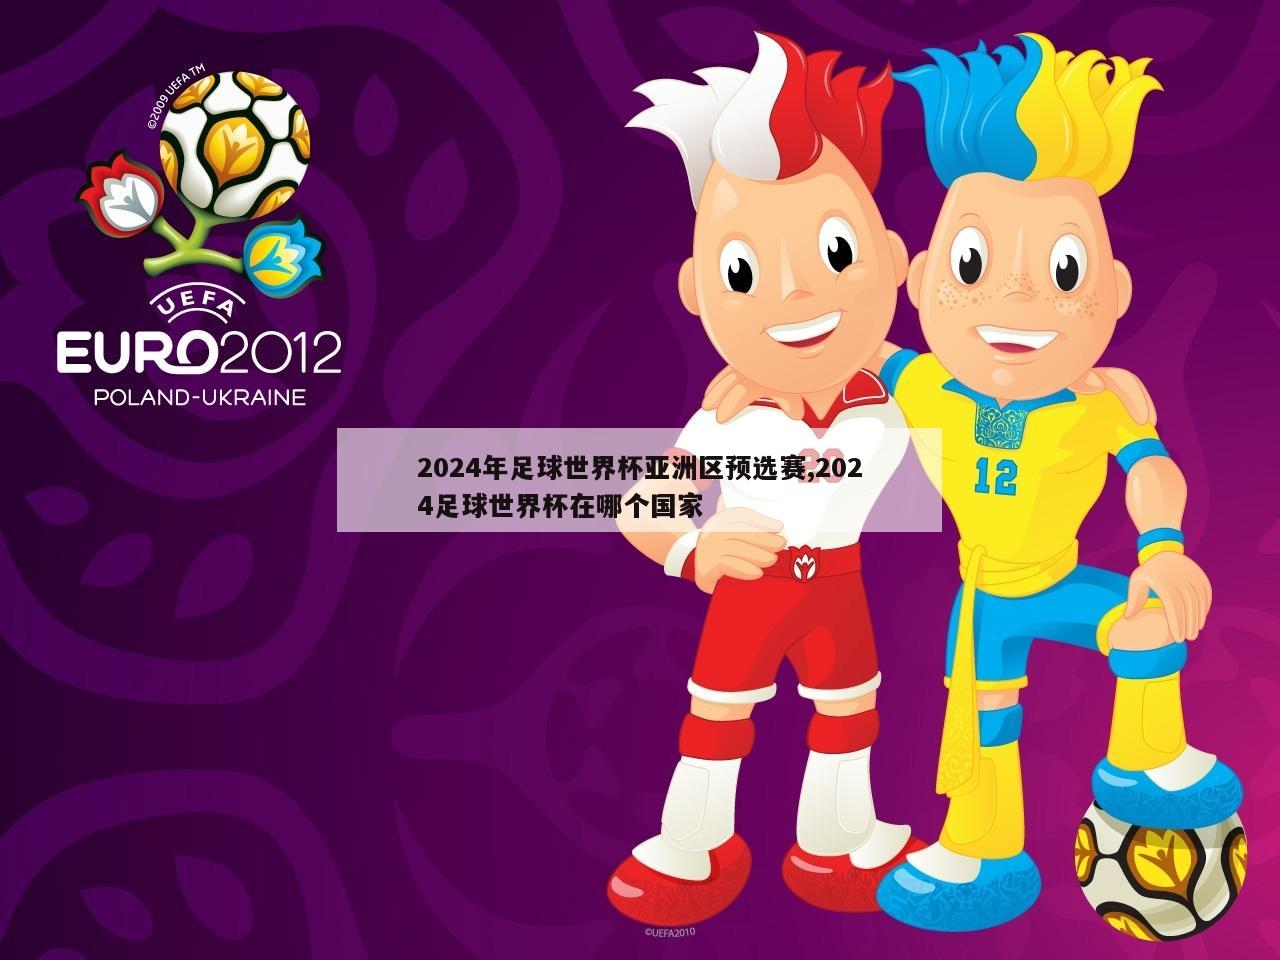 2024年足球世界杯亚洲区预选赛,2024足球世界杯在哪个国家-第1张图片